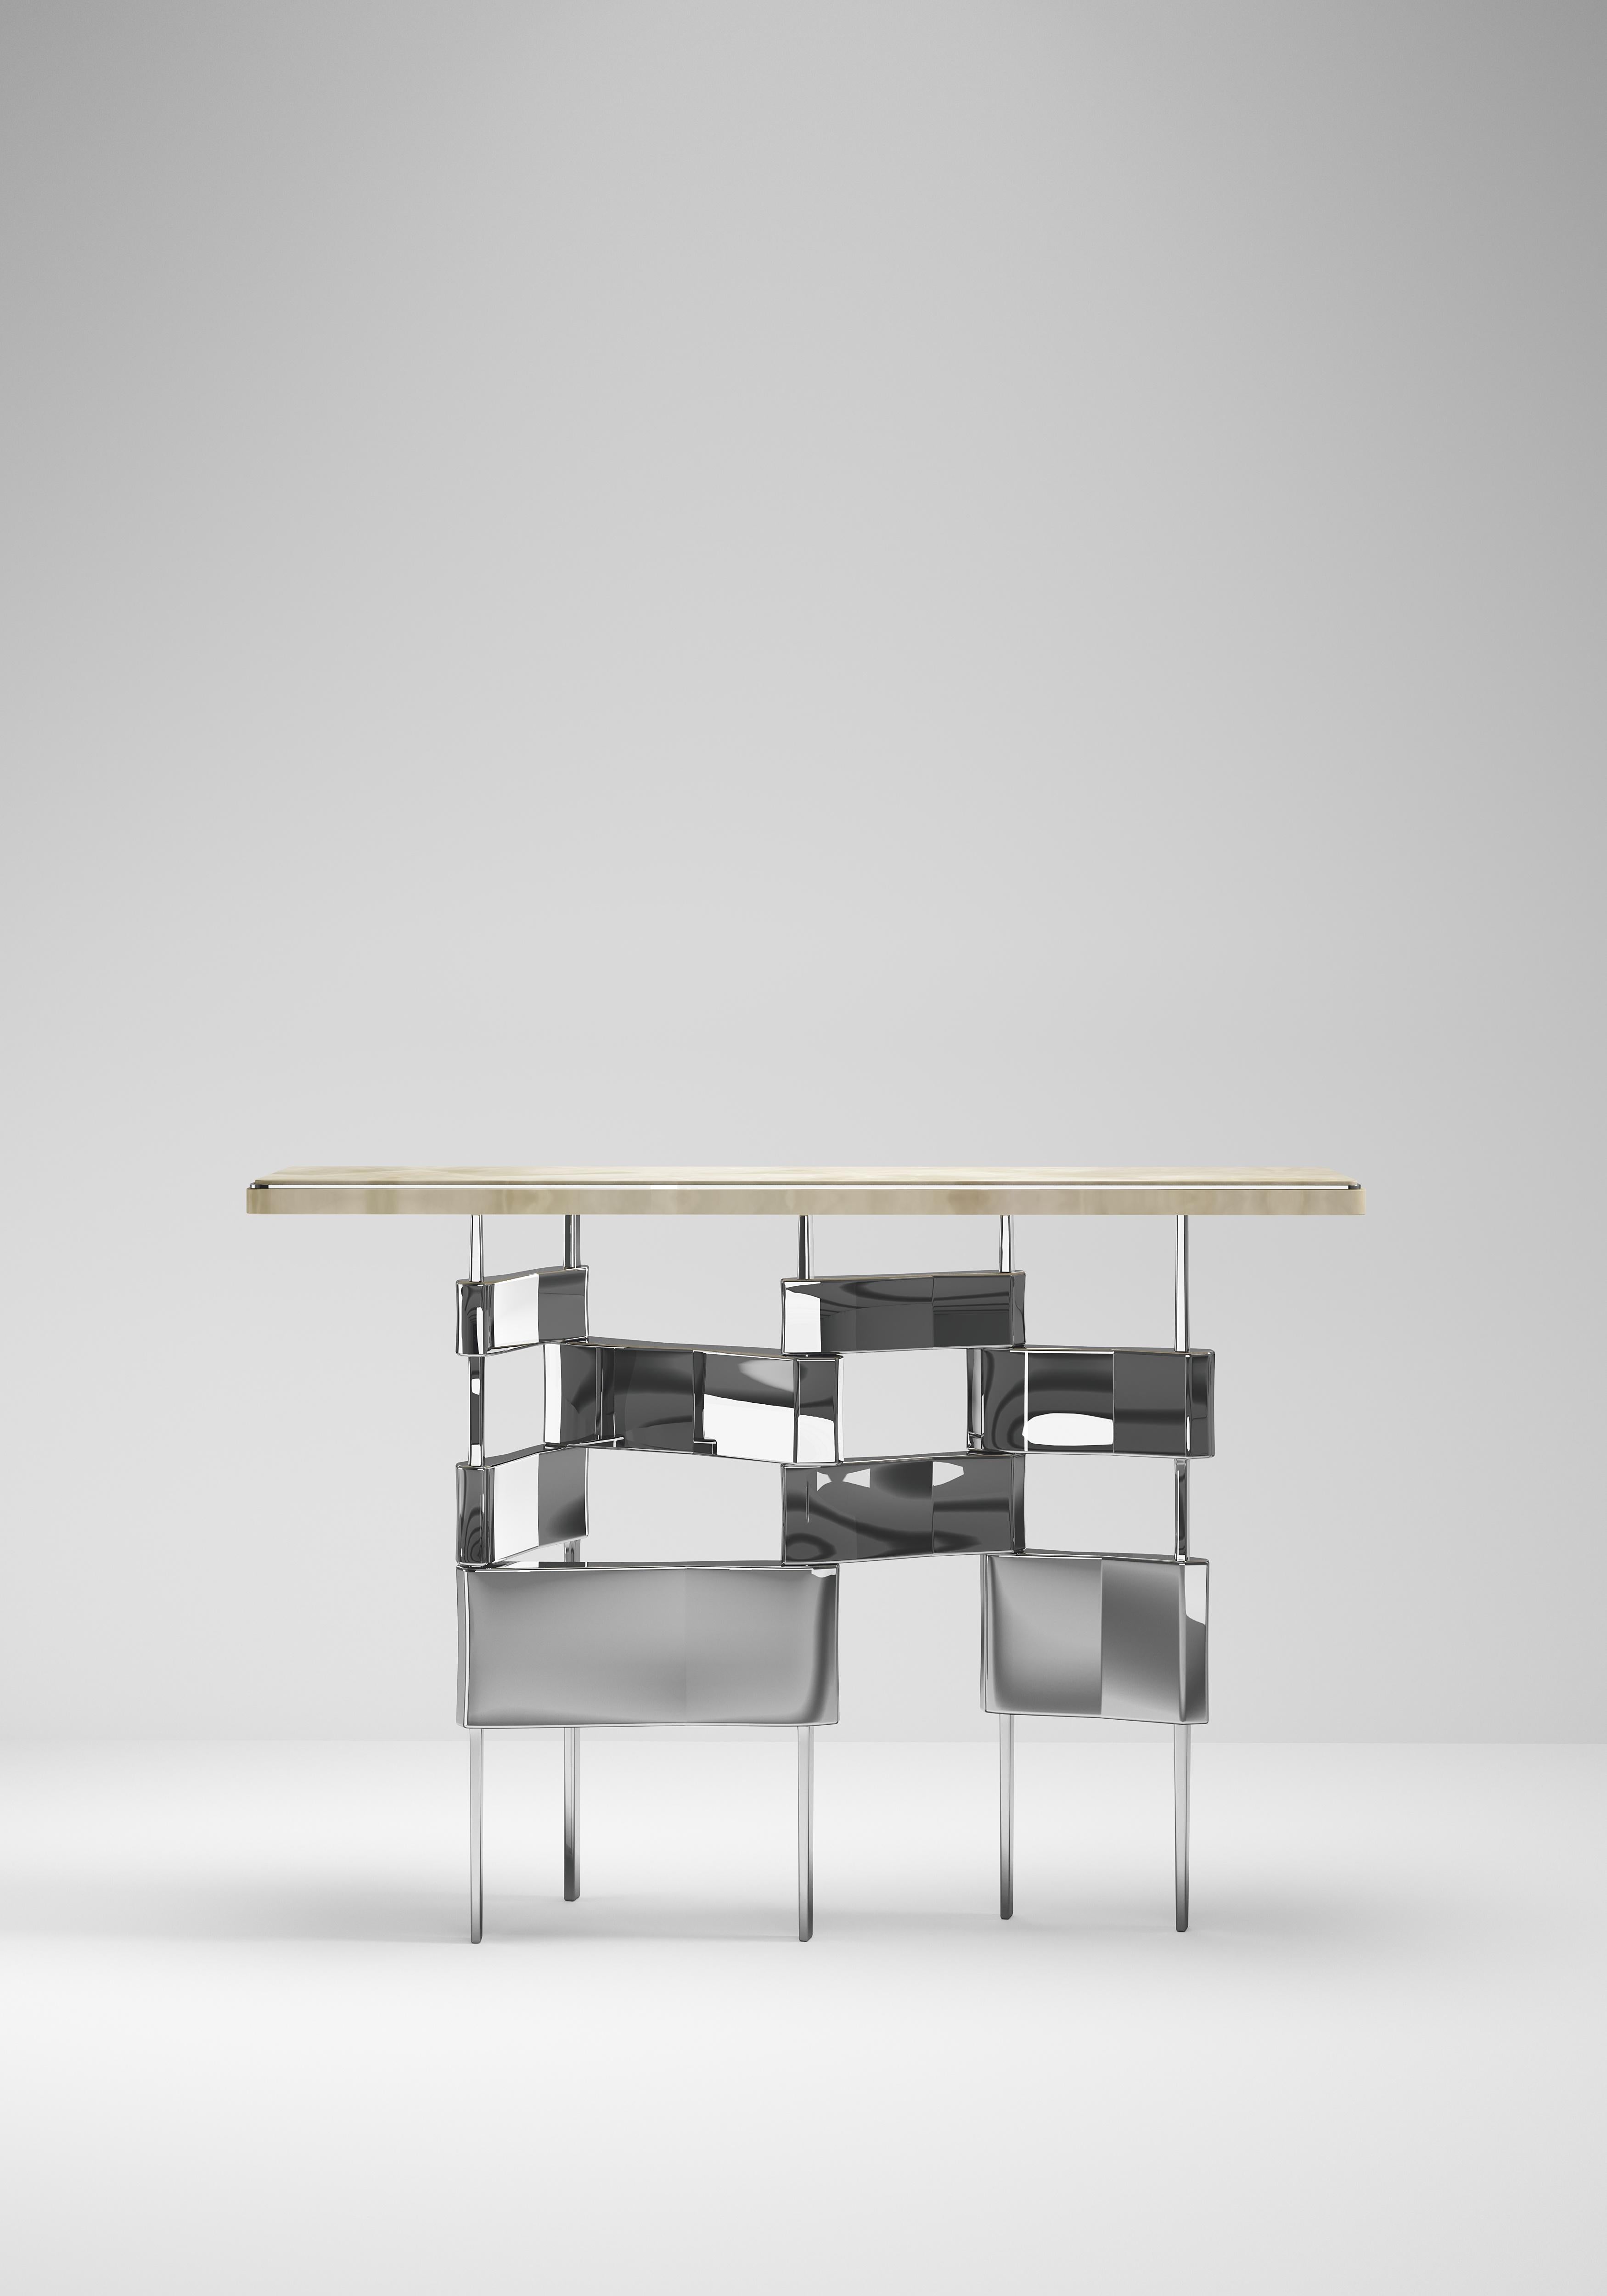 La table console Metropolis de Kifu Paris est un design dramatique et sculptural qui démontre l'incroyable et caractéristique travail artisanal de ses gènes d'Augousti. La base en acier inoxydable poli de la console s'inspire conceptuellement de la